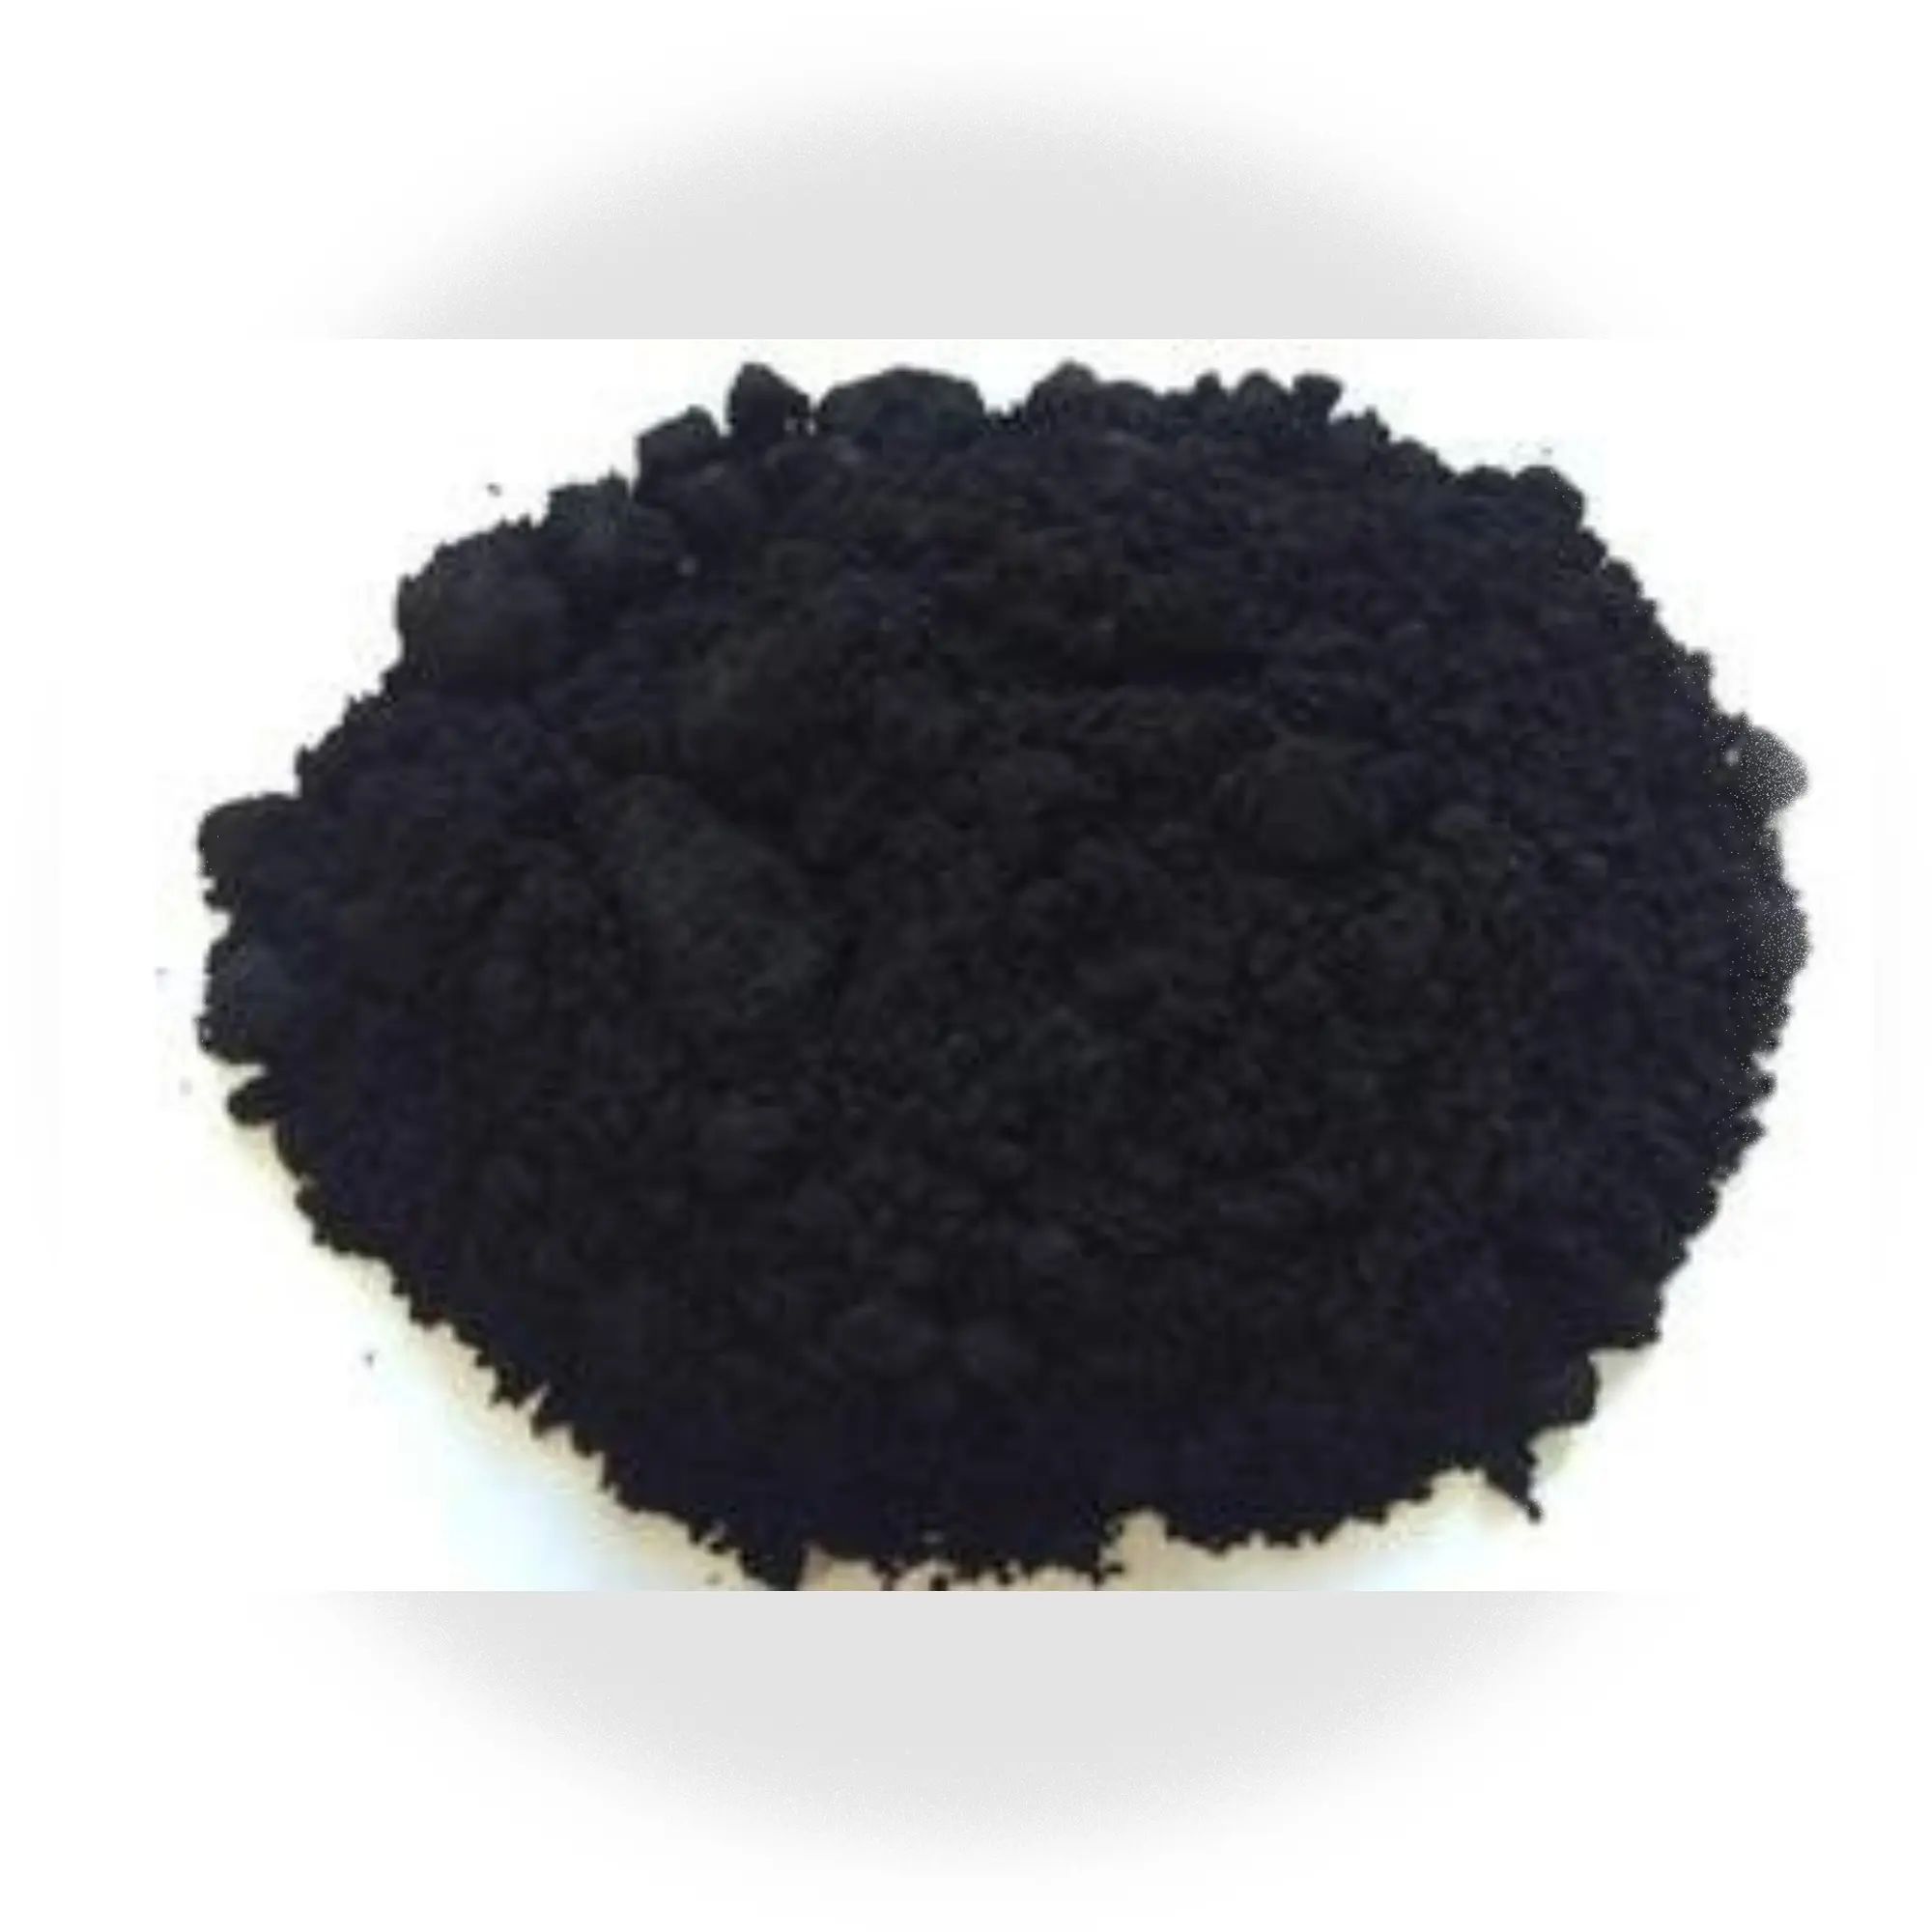 Soufre imprégné KOH NaOH acide phosphorique potasse oxyde de cuivre formaldéhyde granulés cylindre colonnaire charbon actif